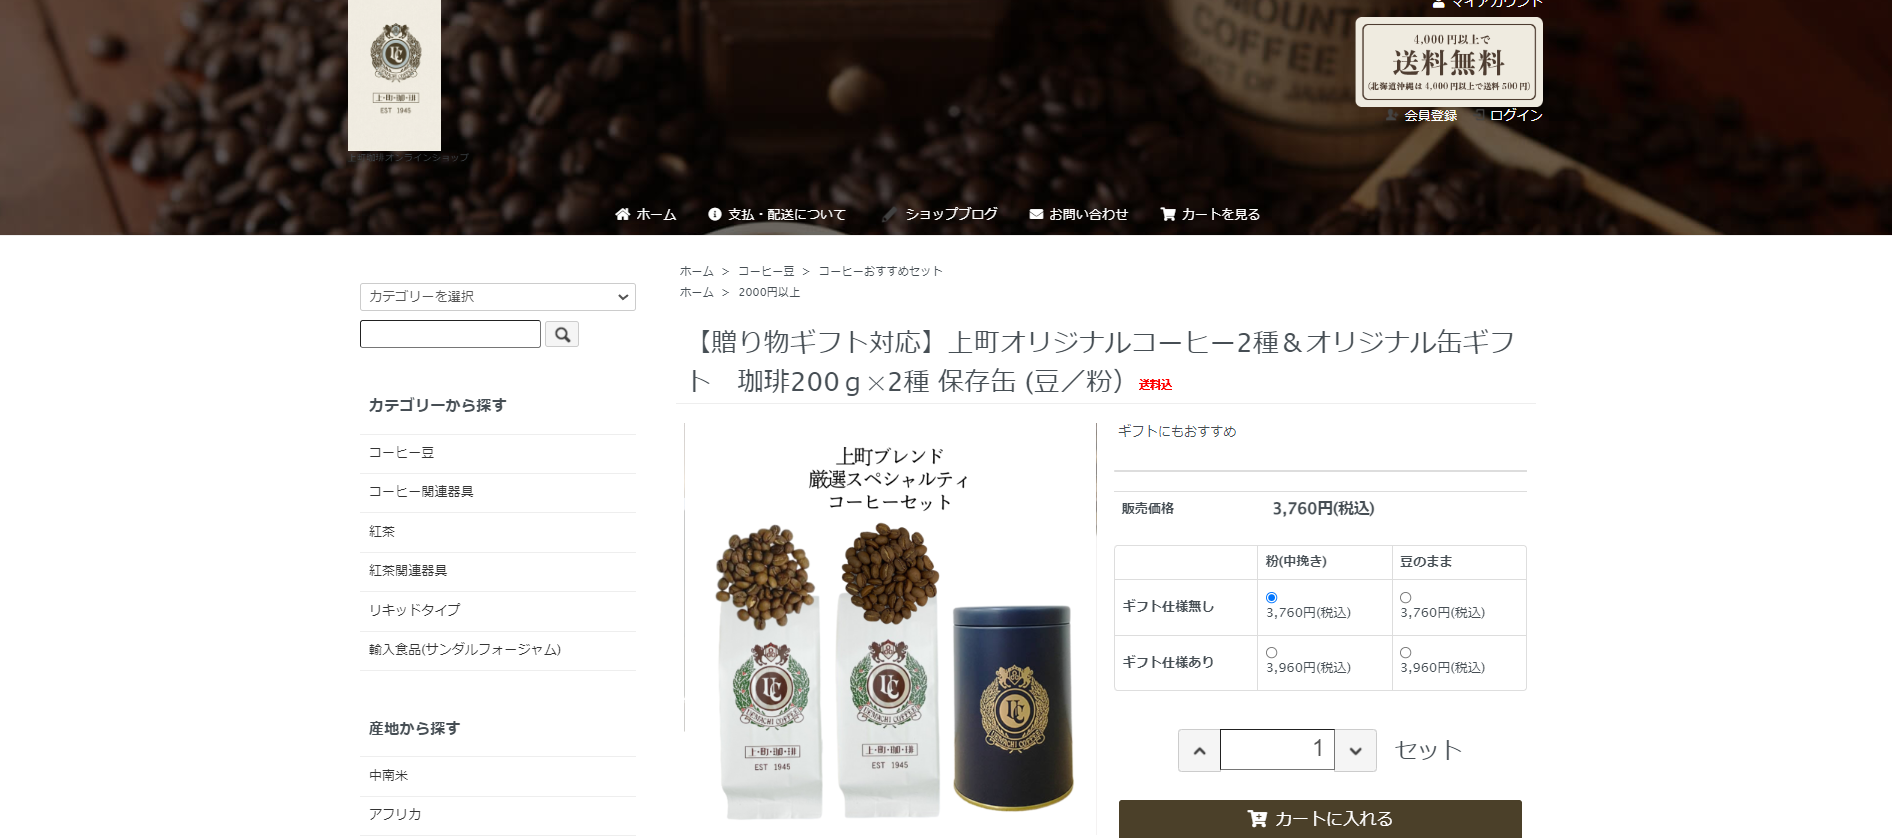 1.上町珈琲「上町オリジナルコーヒー2種＆オリジナル缶ギフト」